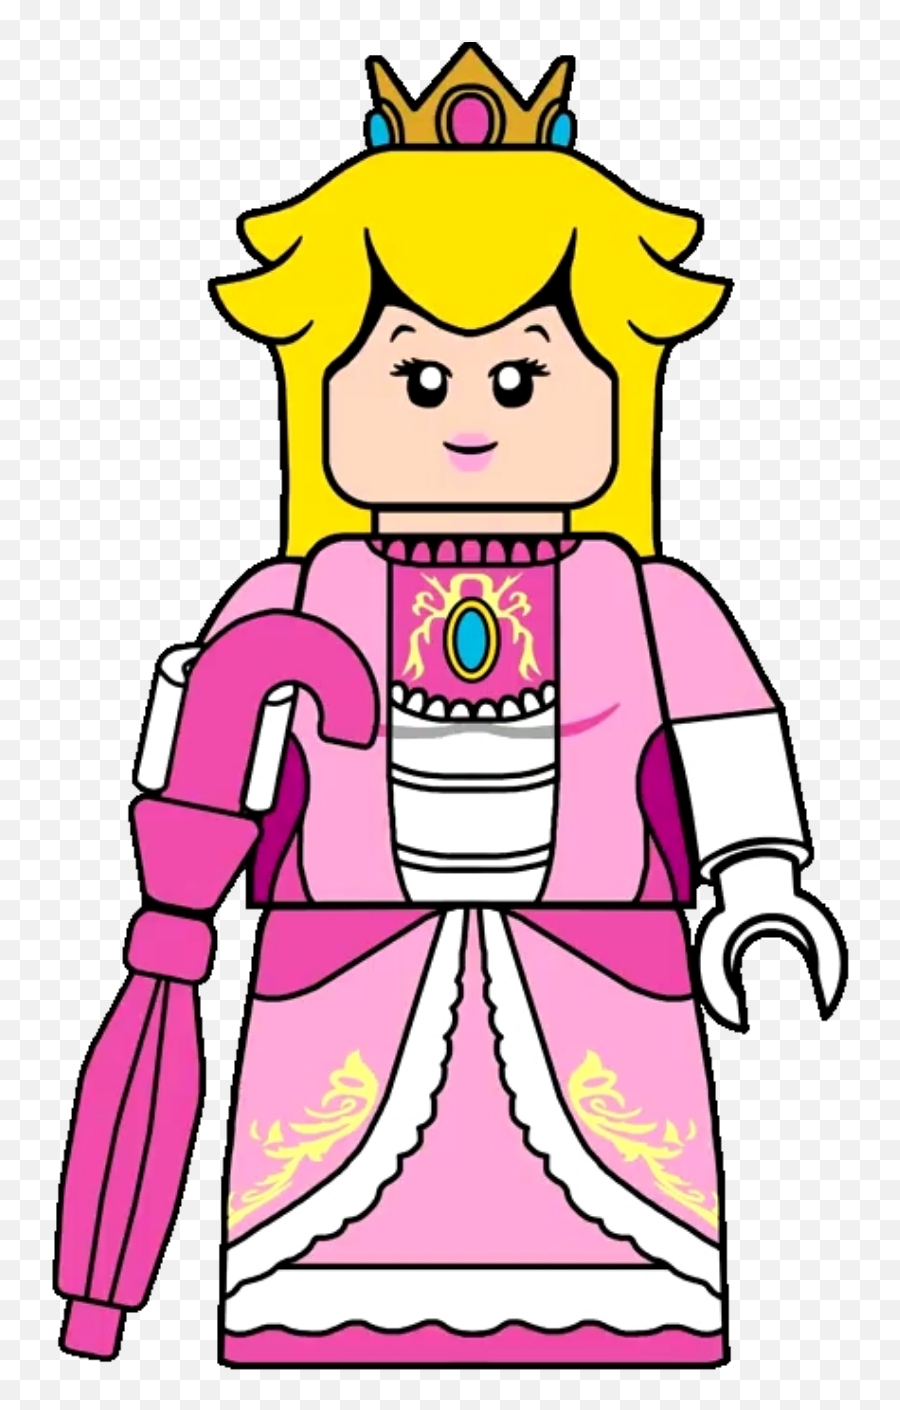 Princess Peach - Shadow Queen Princess Peach Lego Png,Princess Peach Icon